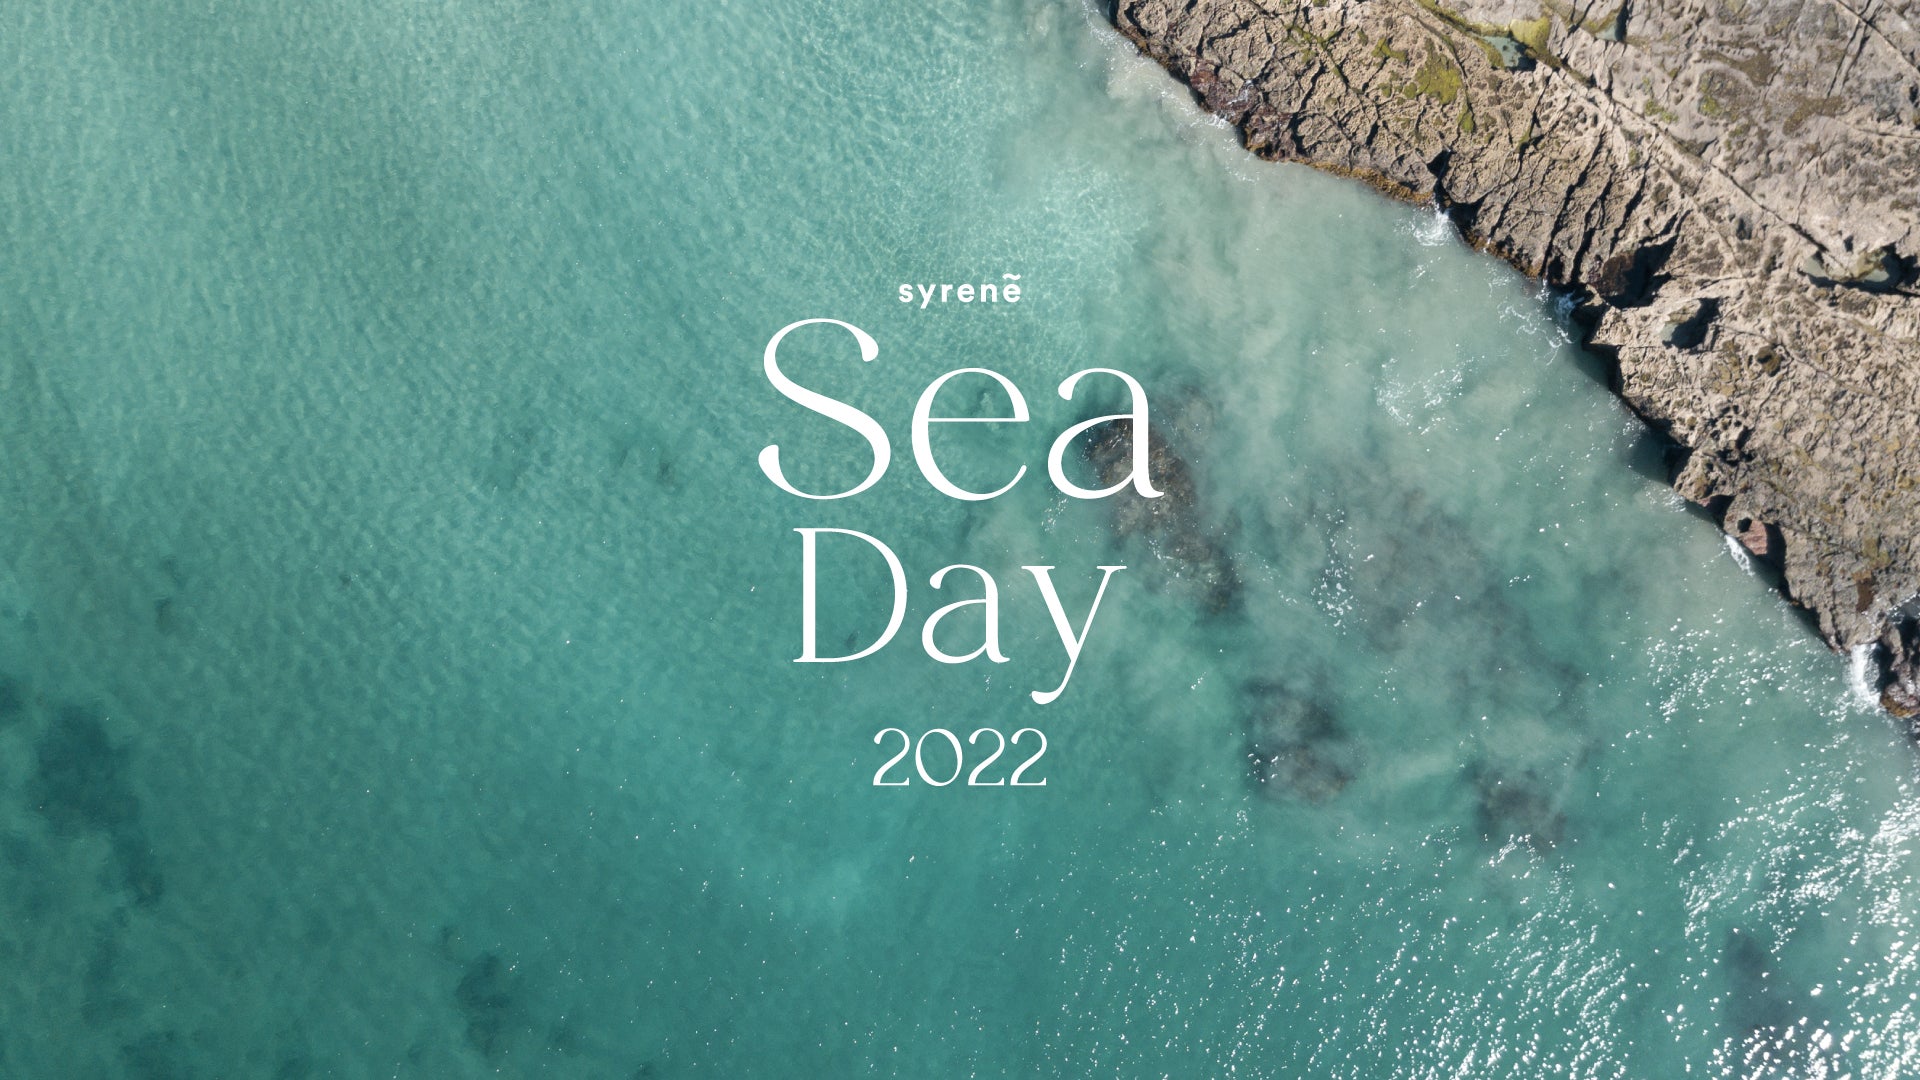 Syreneは7/18(月)の海の日を記念して、スタイリスト百々千晴さんやメイクアップアーティストのnagisaさん、シンガーソングライターのBaby Kiyさんらを迎えたインスタライブ配信が決定。　